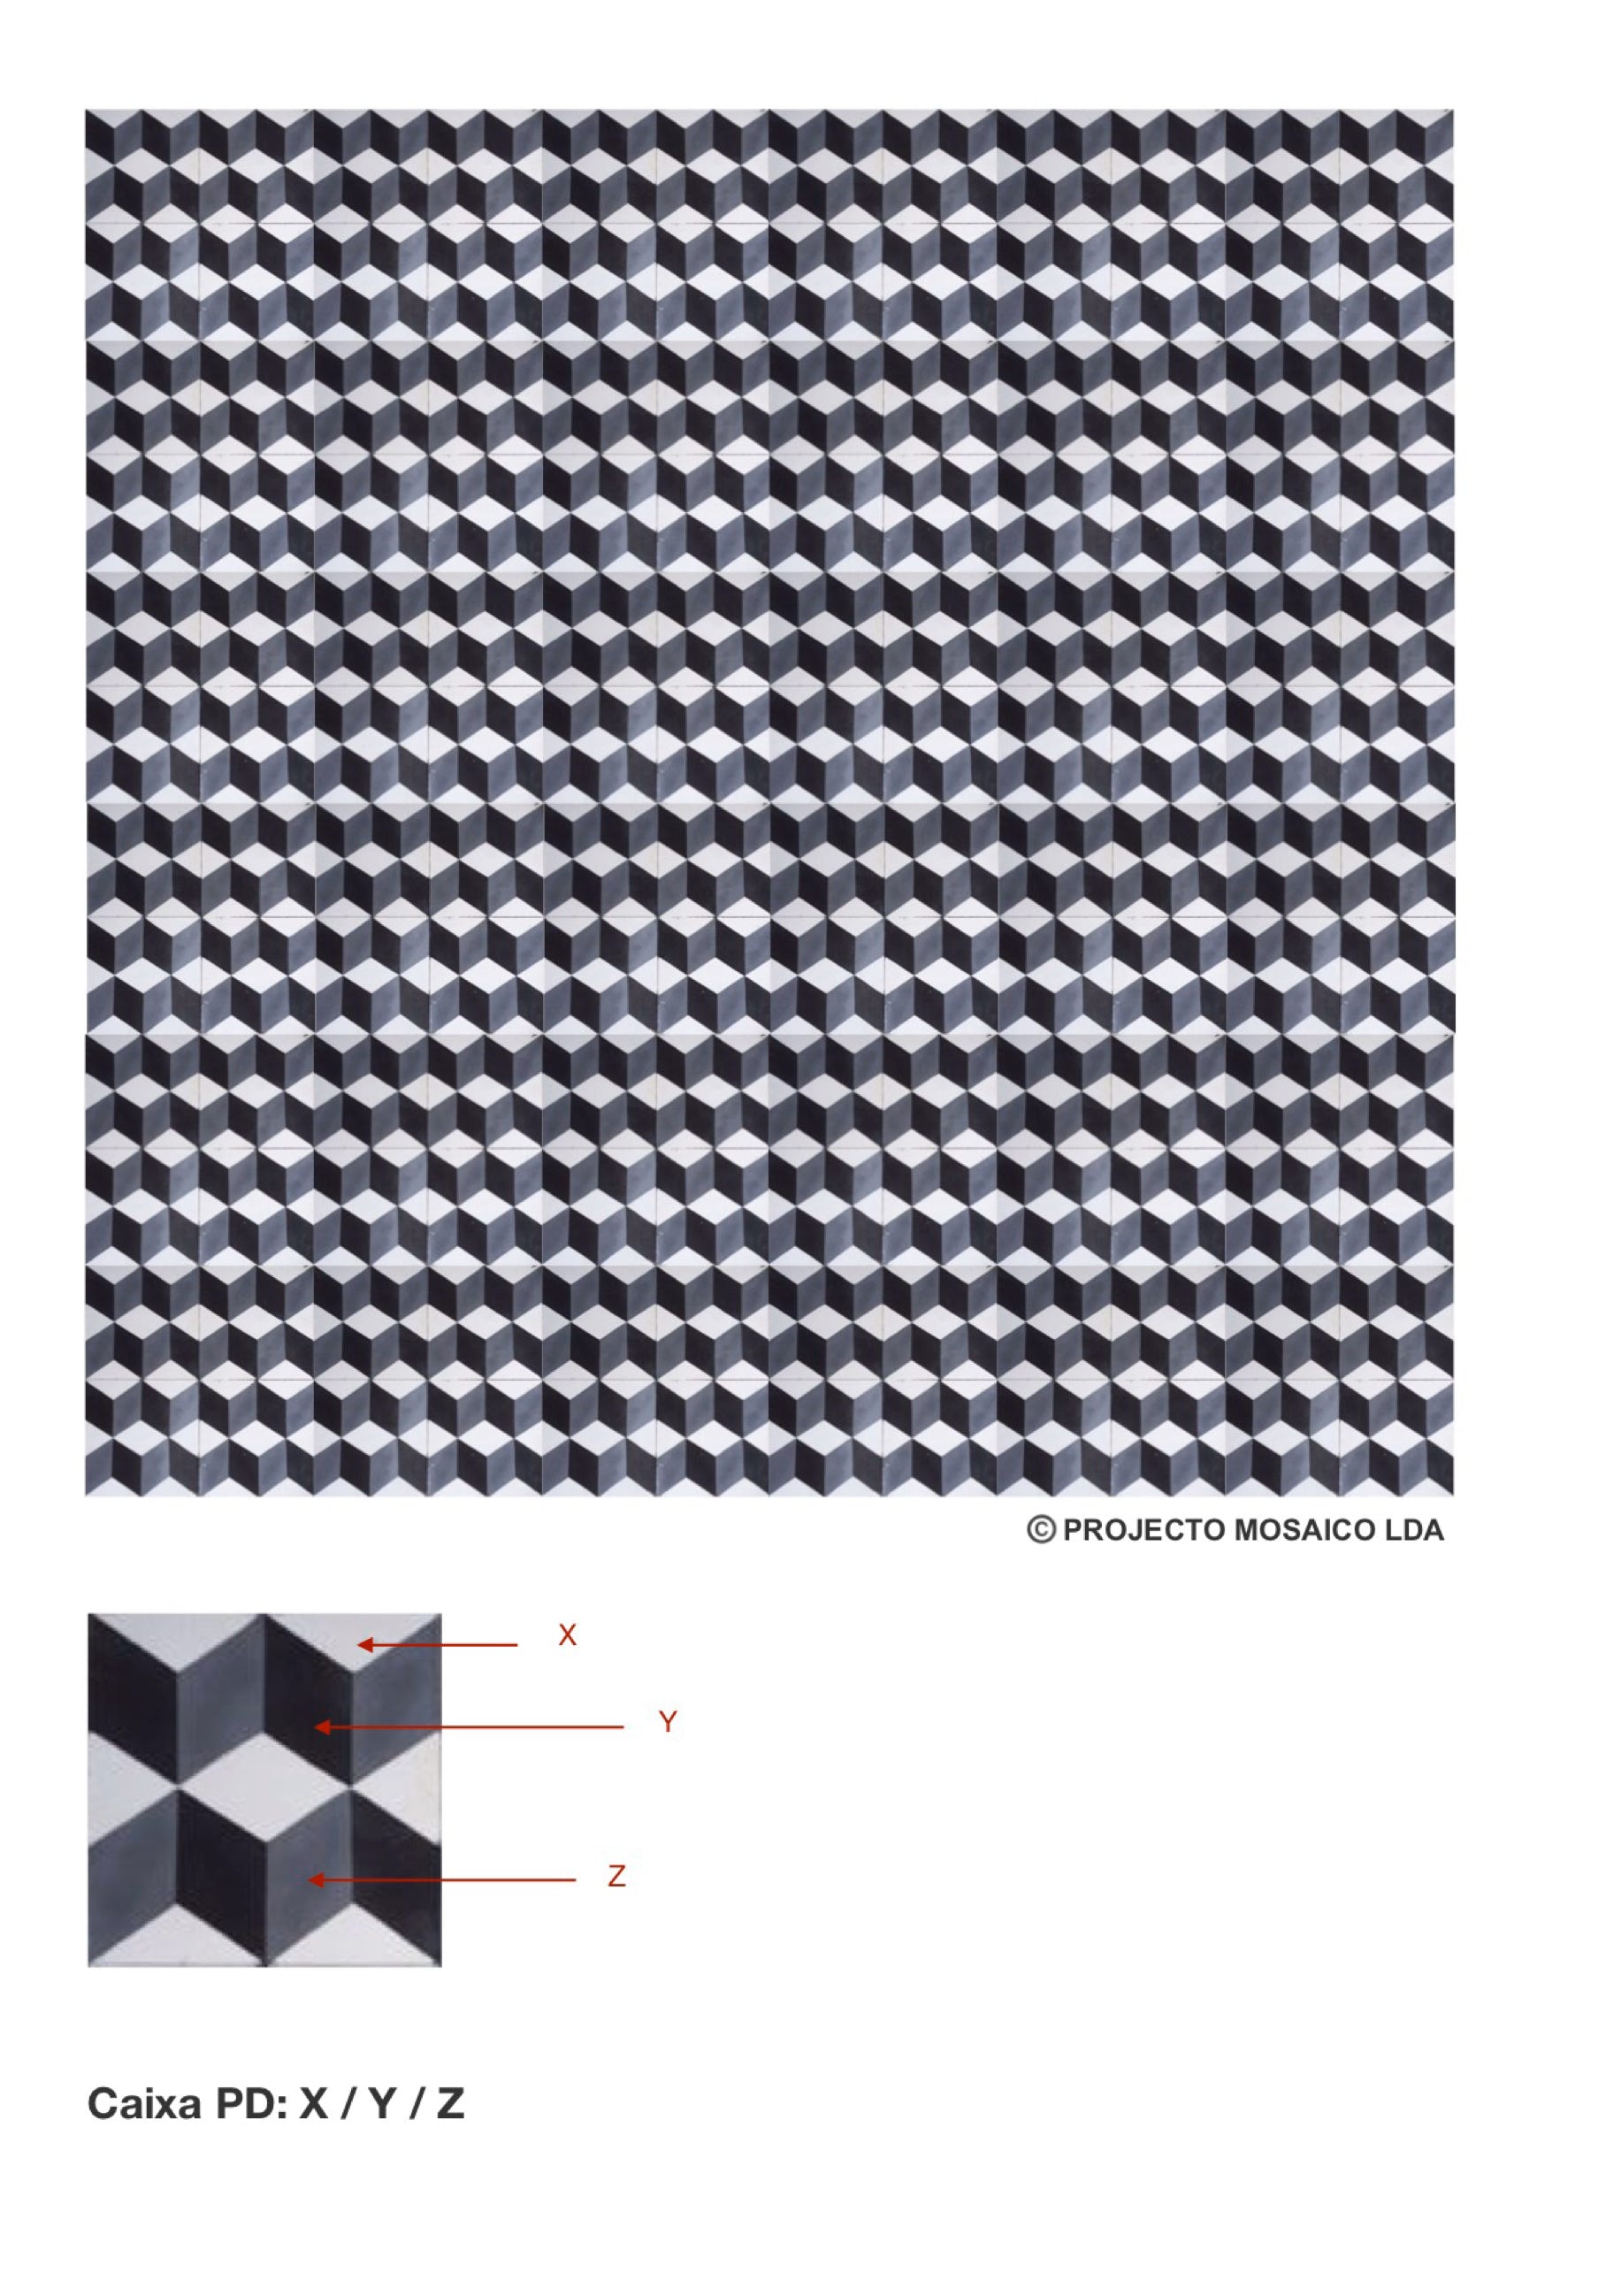 illustração de aplicação do mosaico hidráulico ref: Caixa PD